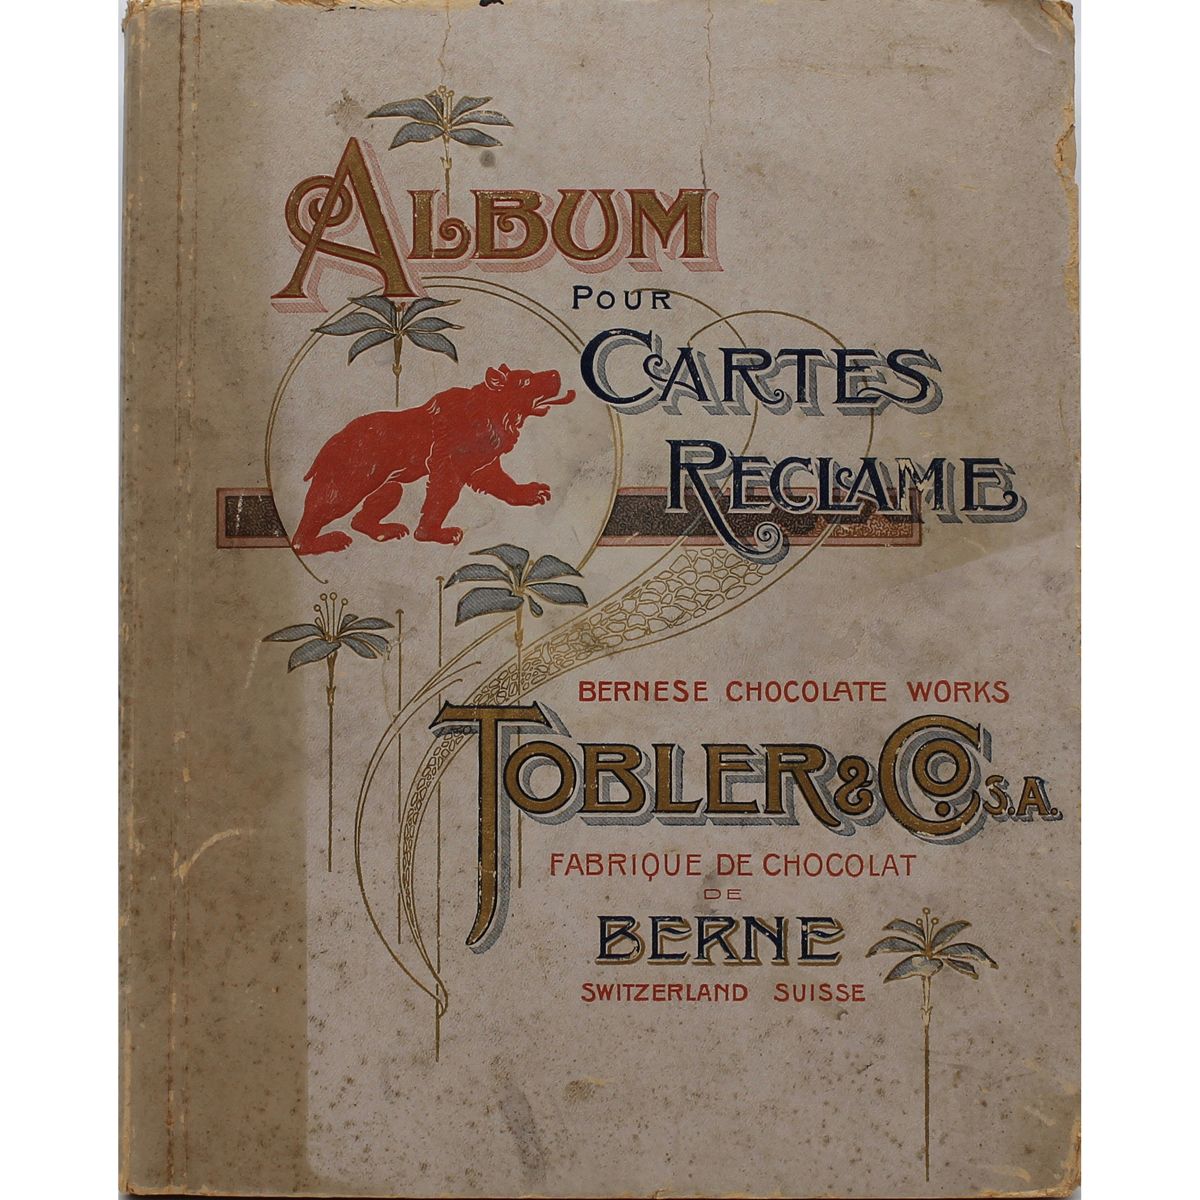 ALBUM POUR CARTES RECLAME "Tobler & Co." Principios del siglo XX
Principios del &hellip;